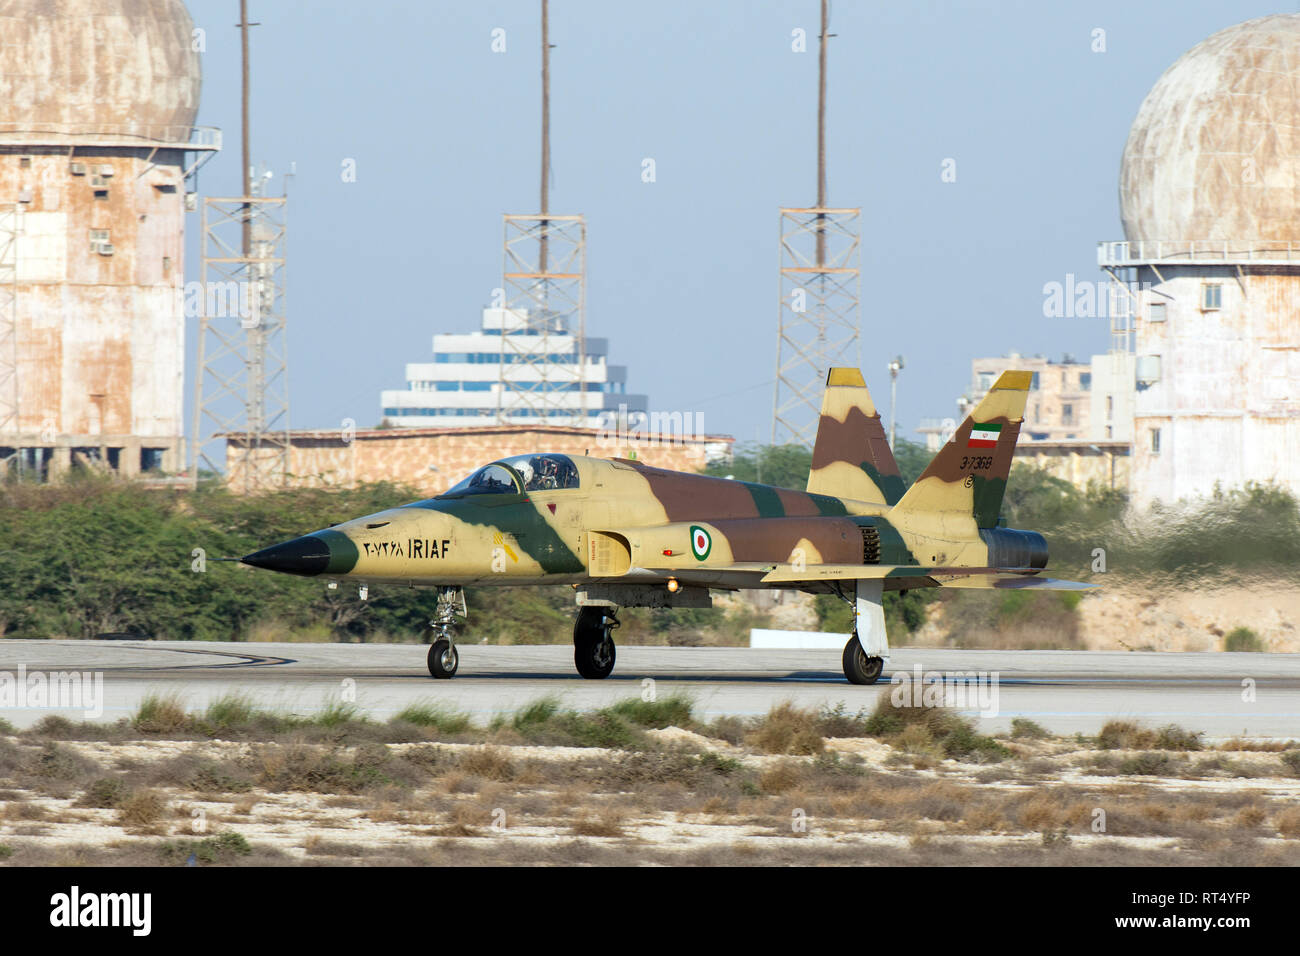 An Islamic Republic of Iran Air Force Saegheh I aircraft landing at Kish International airport. Stock Photo